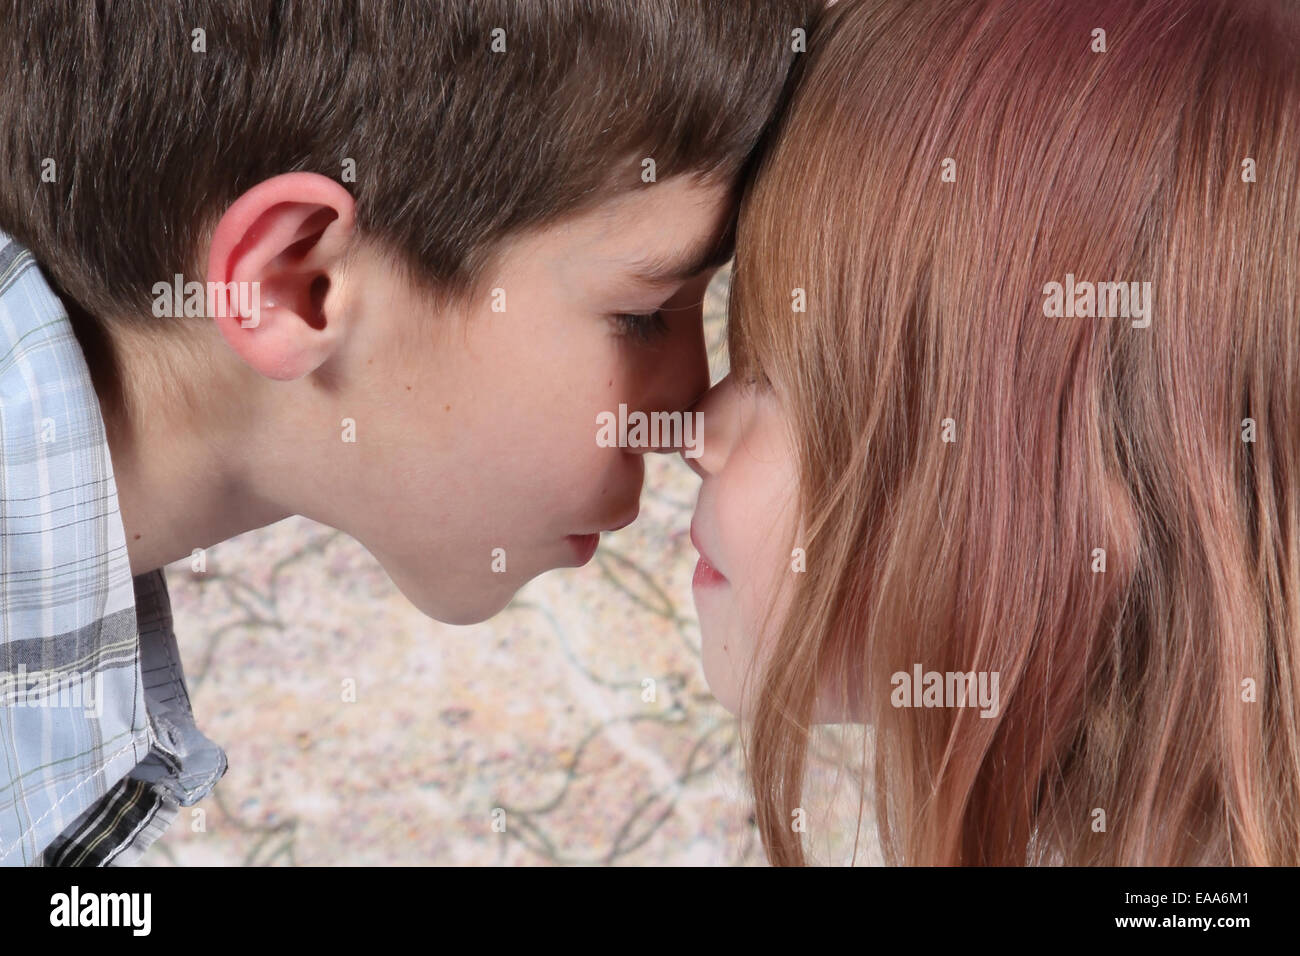 Покажи видео как девочка с мальчиком. Поцелуй мальчика и девочки. Мальчик целует девочку. Поцелуй мальчика и девочки 10 лет.